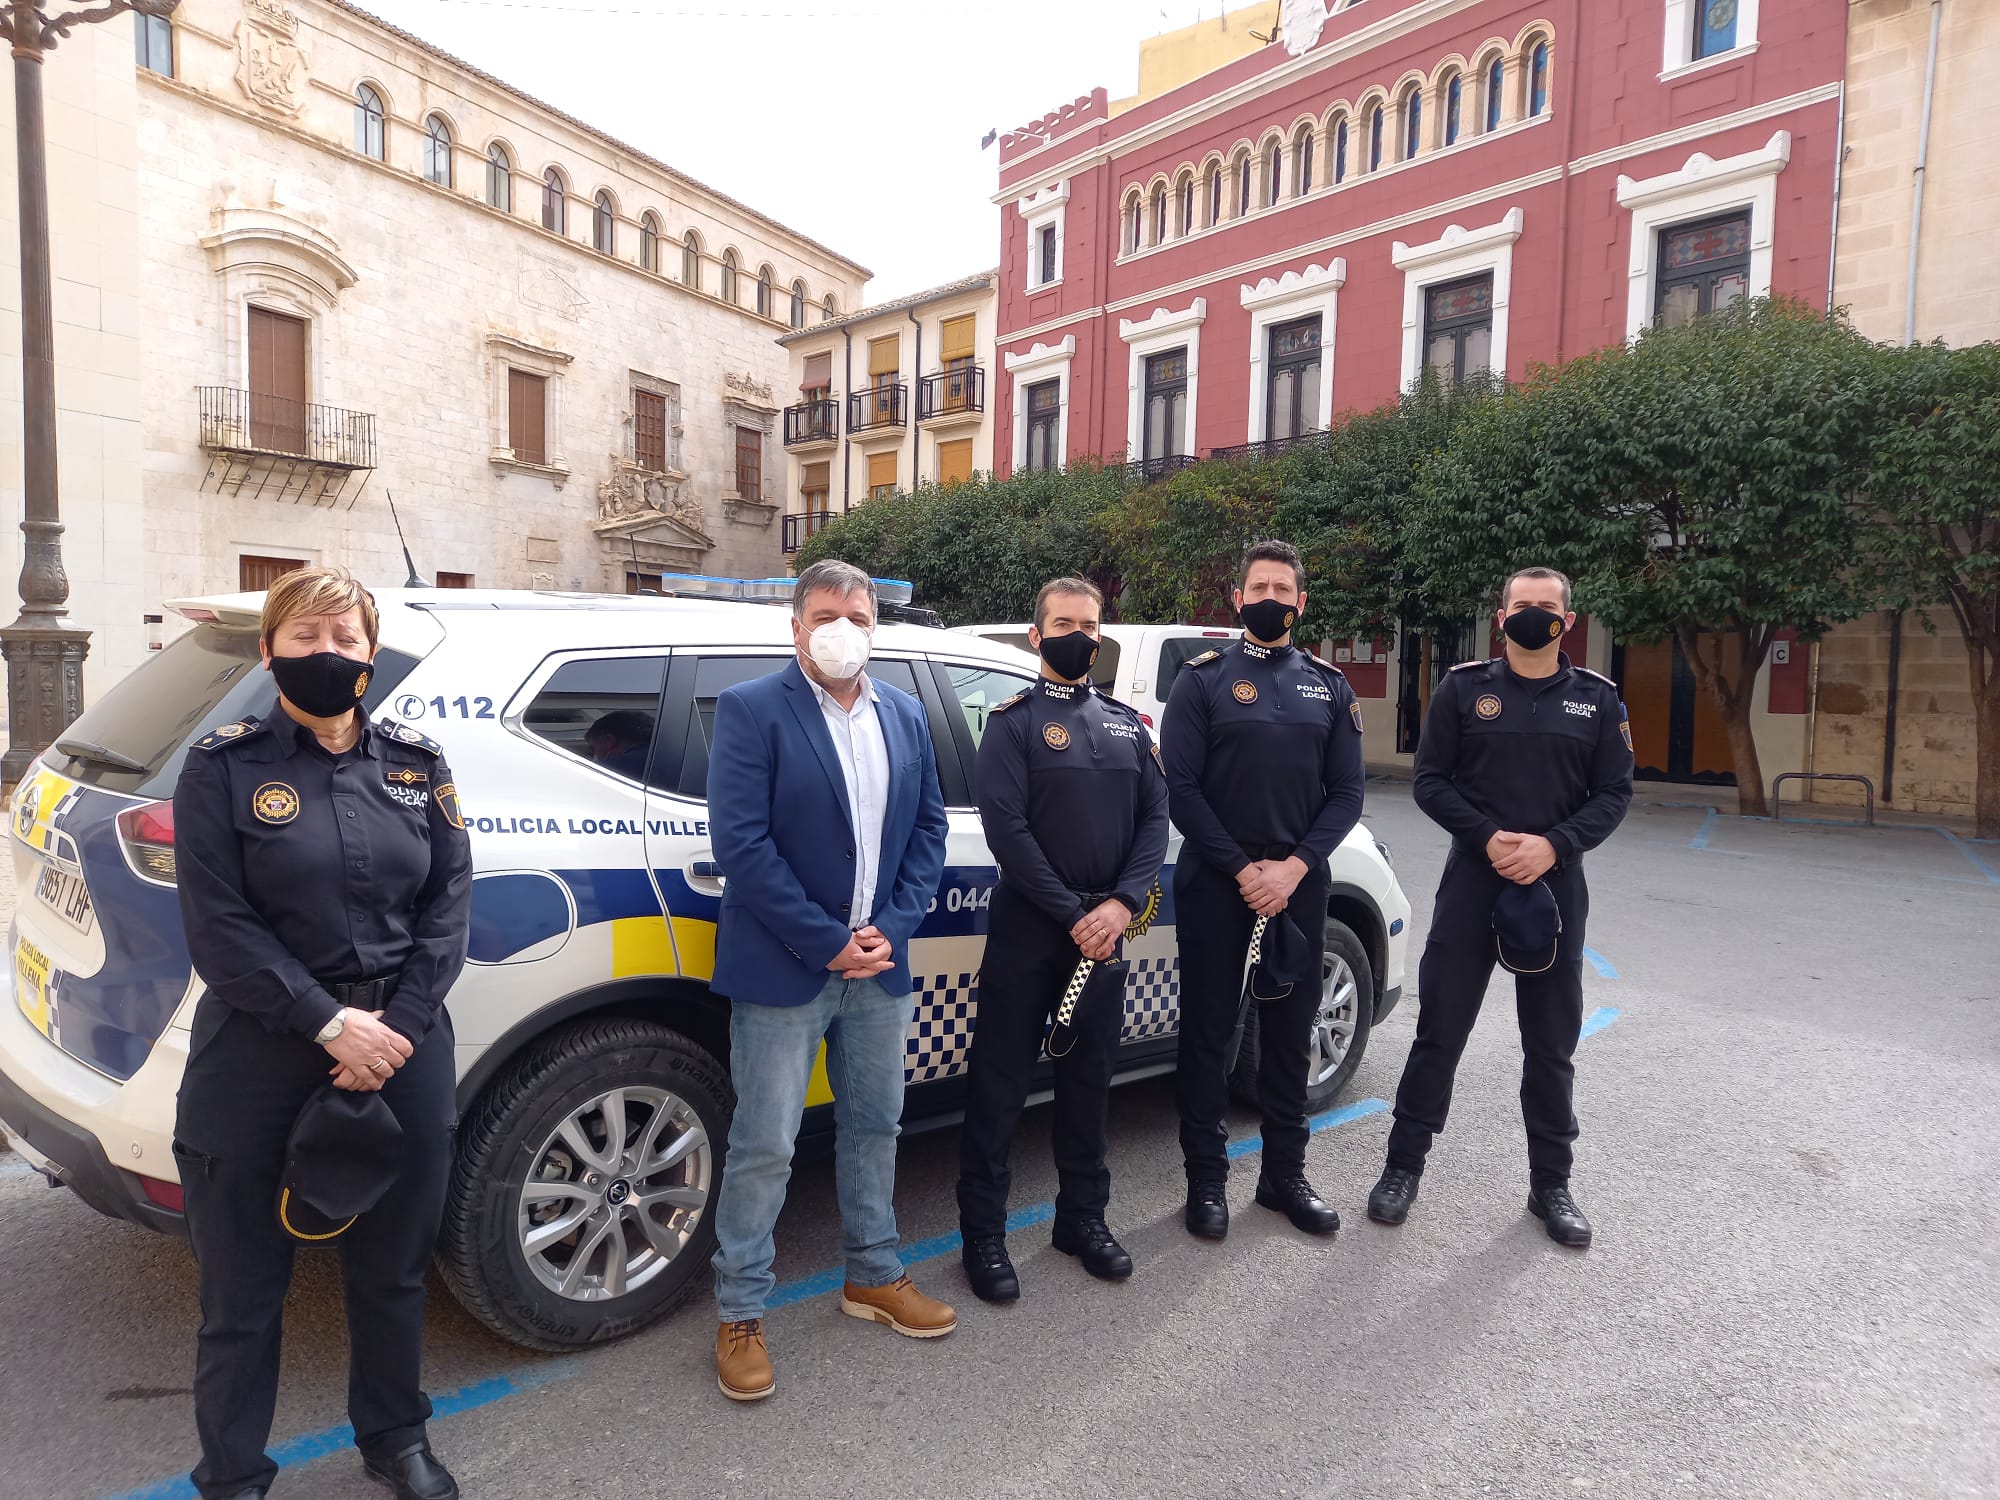 Los cuatro nuevos oficiales de la Policía Local toman posesión de su nuevo cargo en Villena